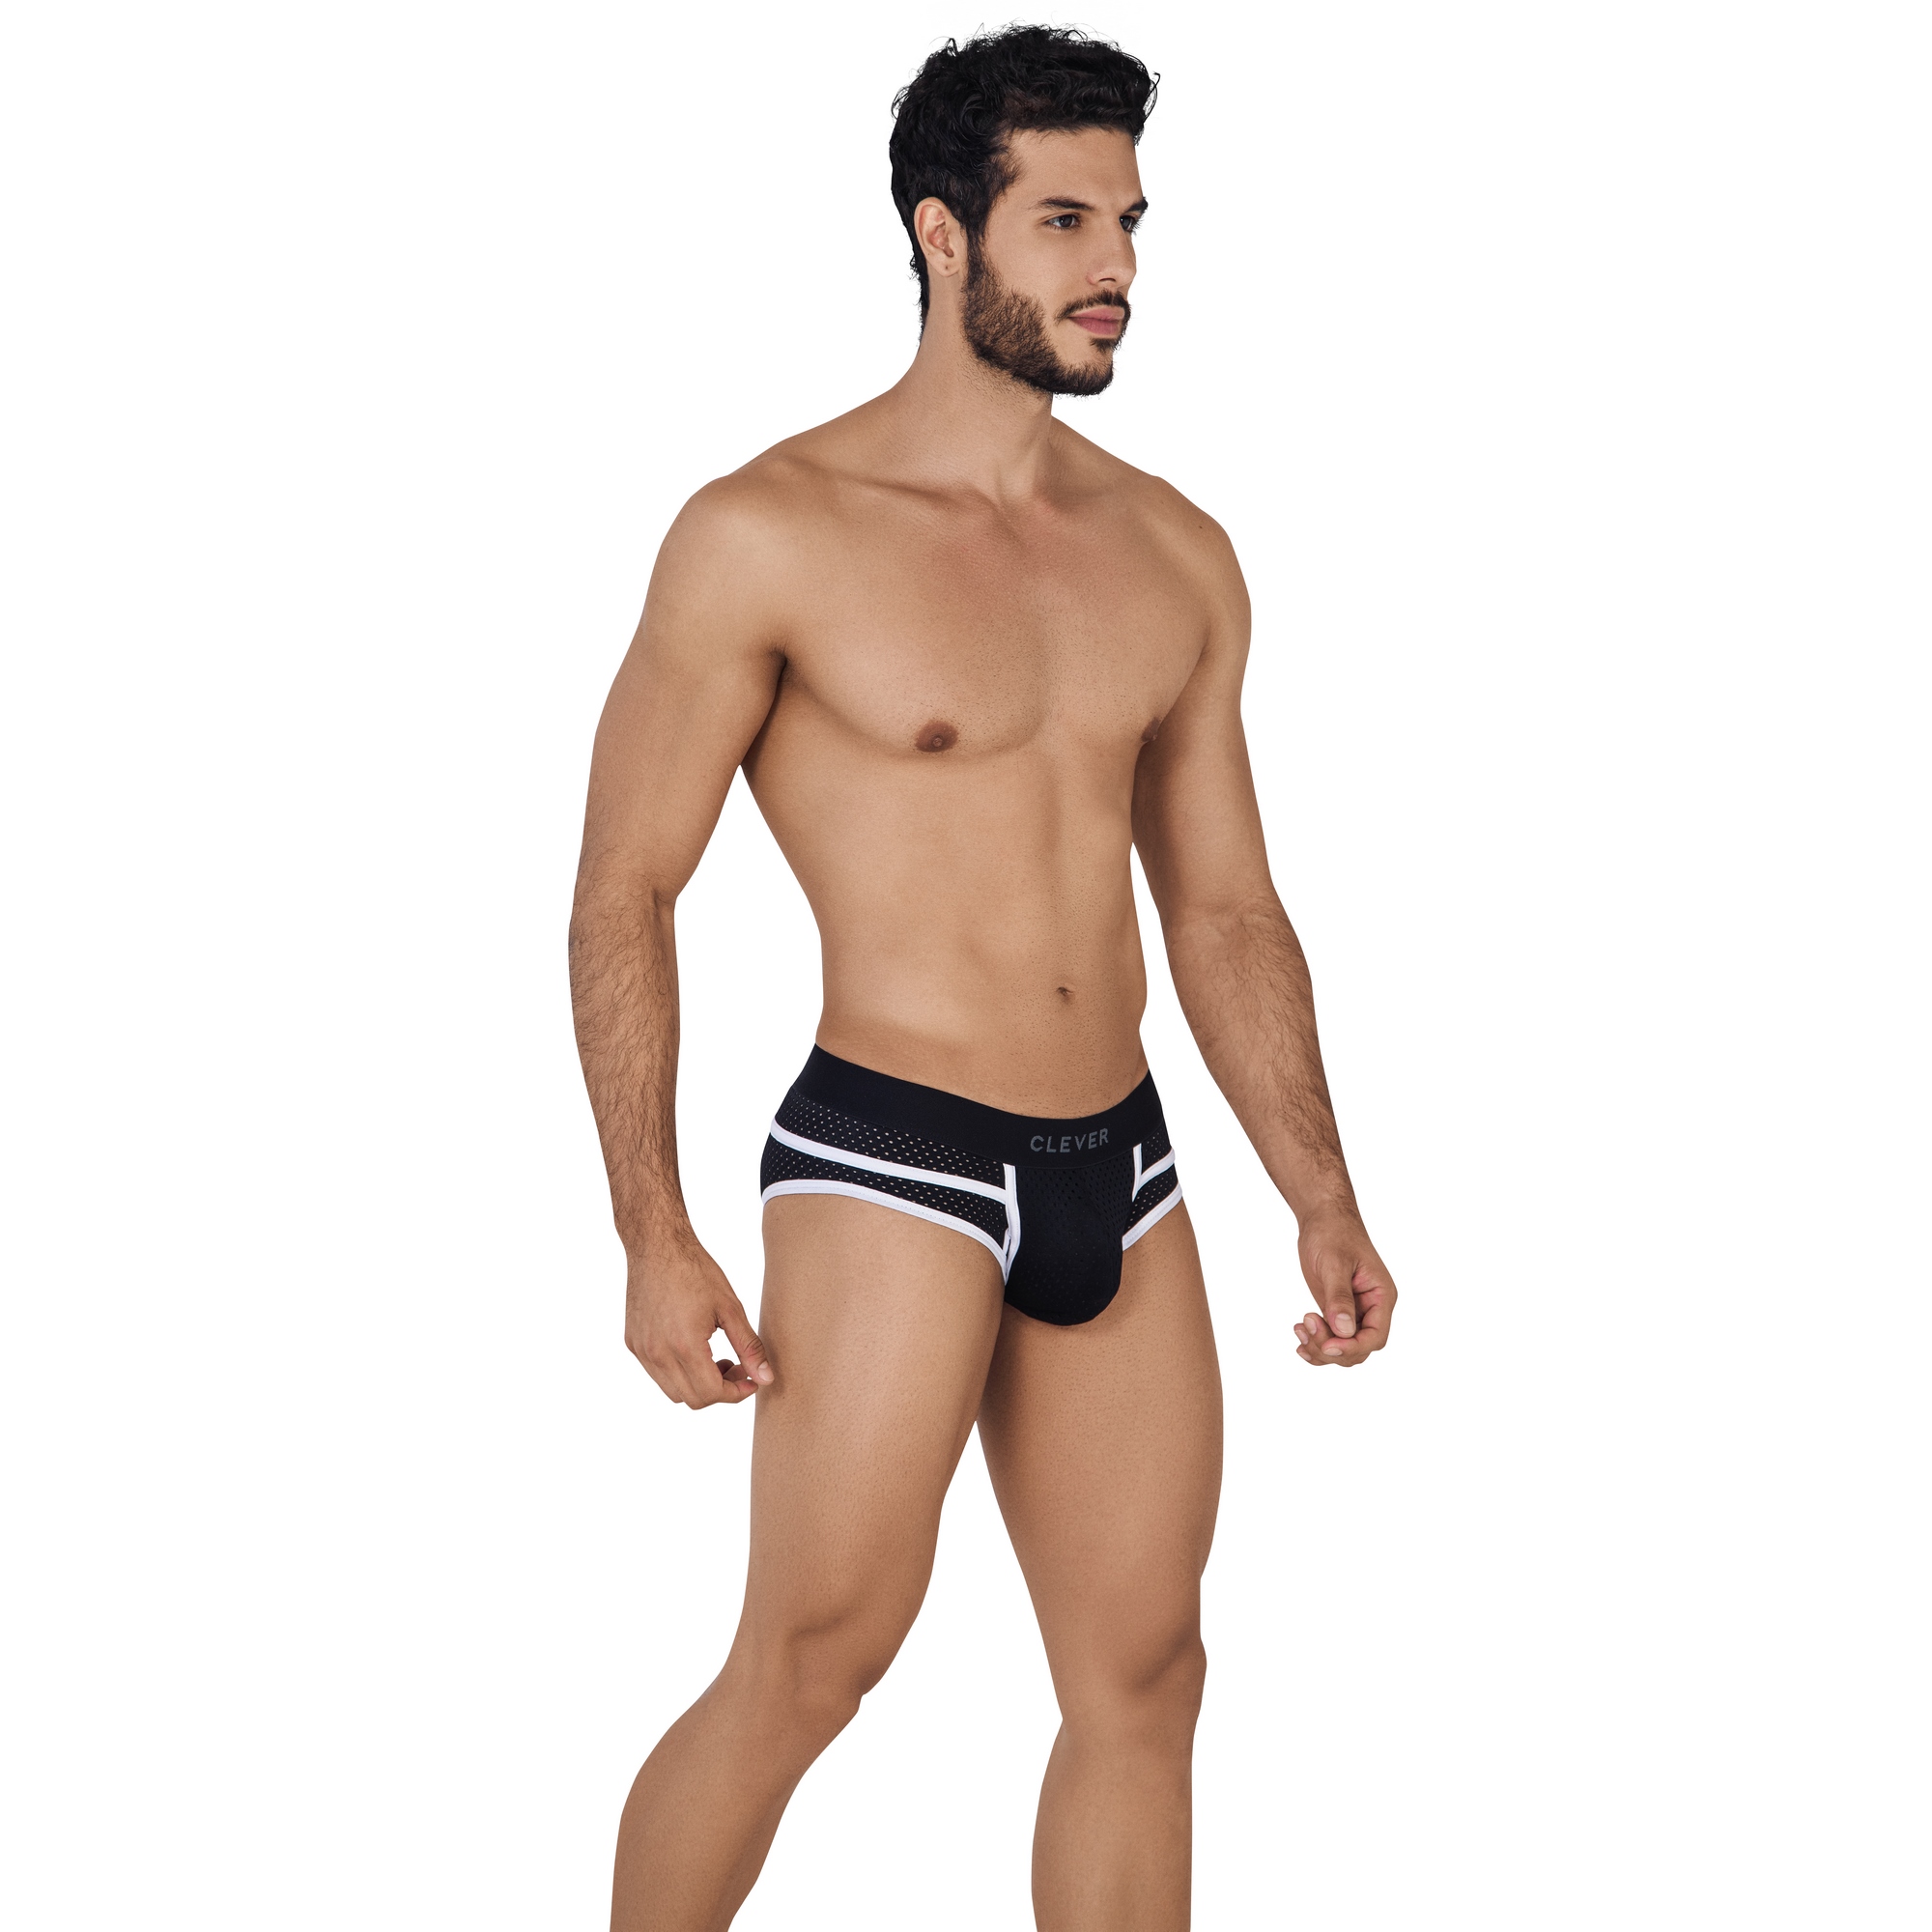 Трусы мужские Clever Masculine Underwear 0620 черные S